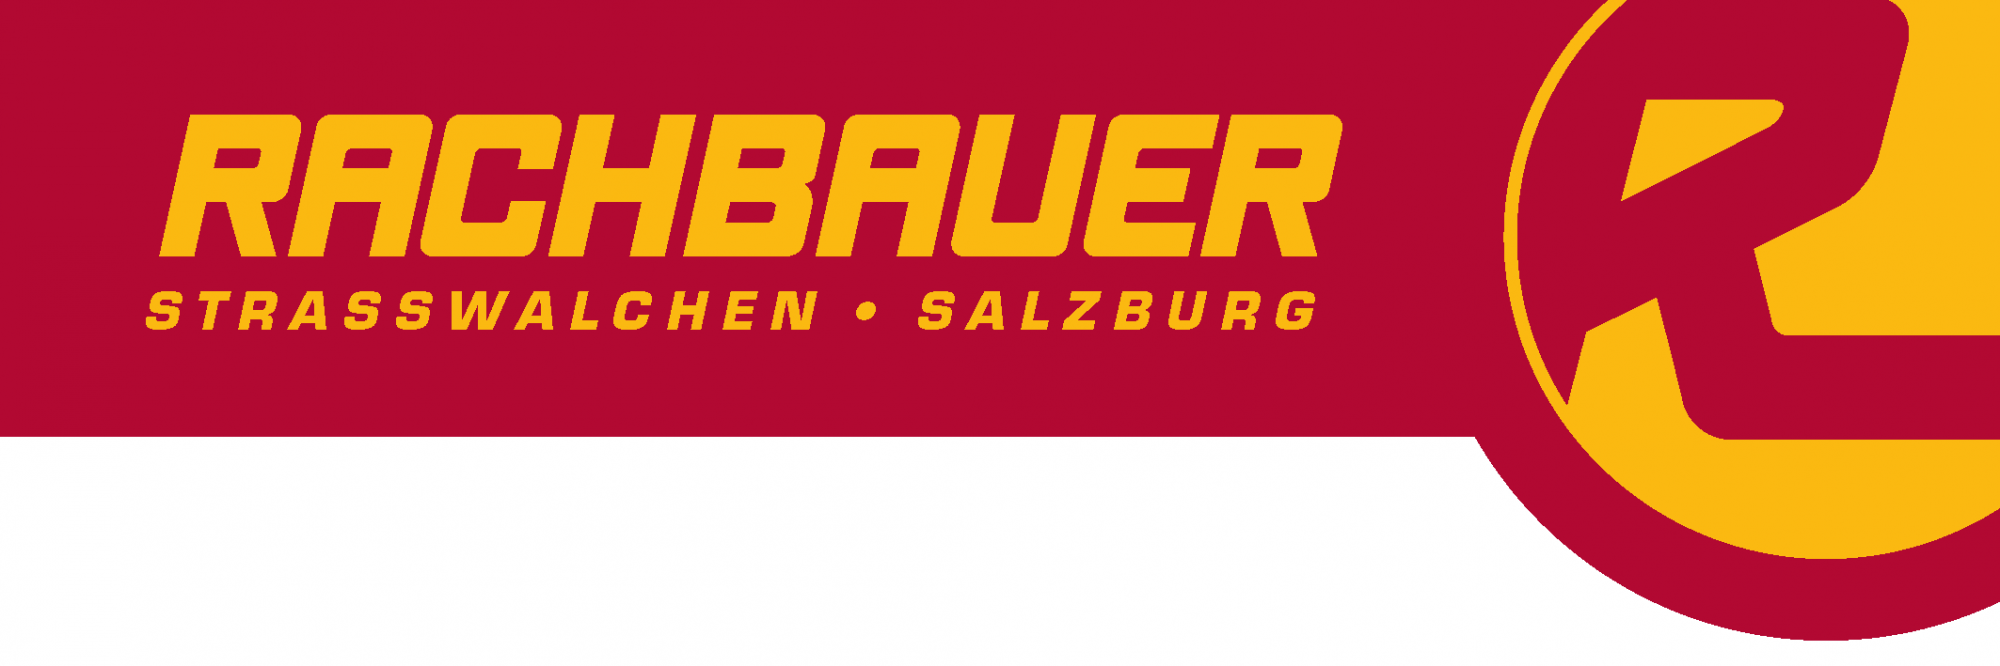 Partner-Rachbauer